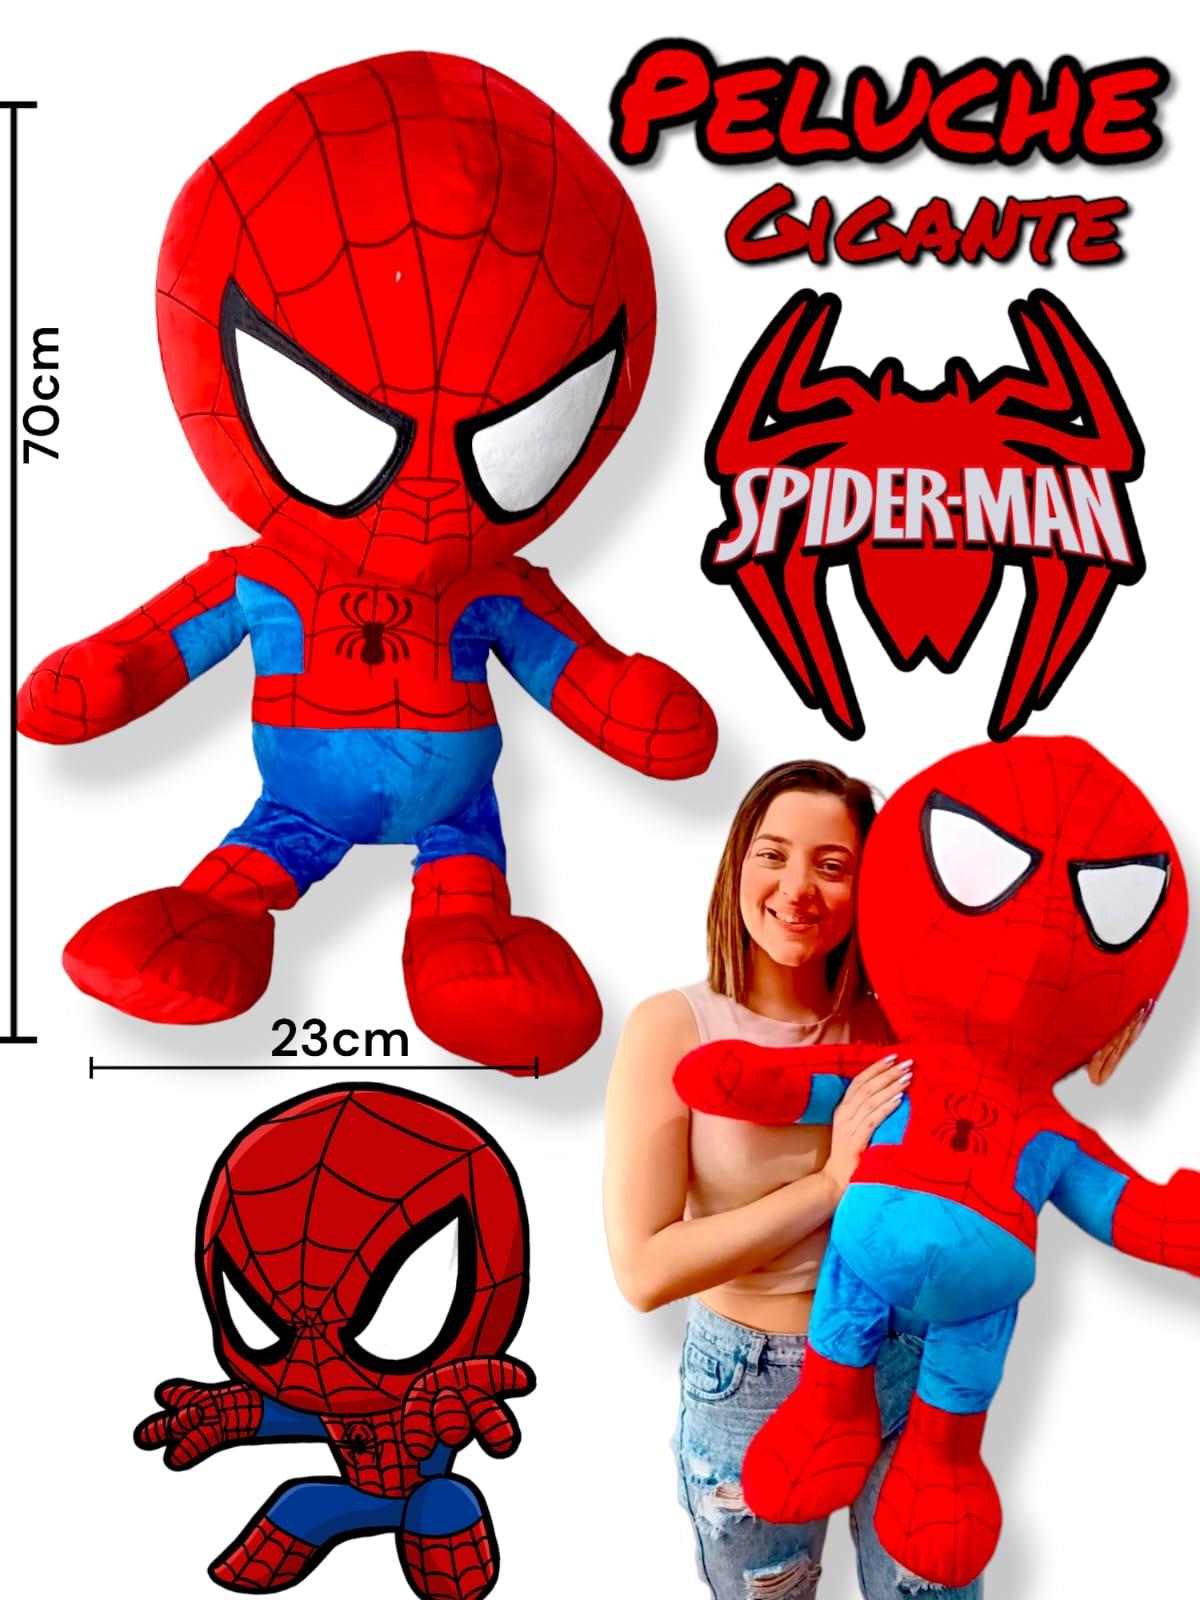 Peluche Gigante Spider Man 70cm